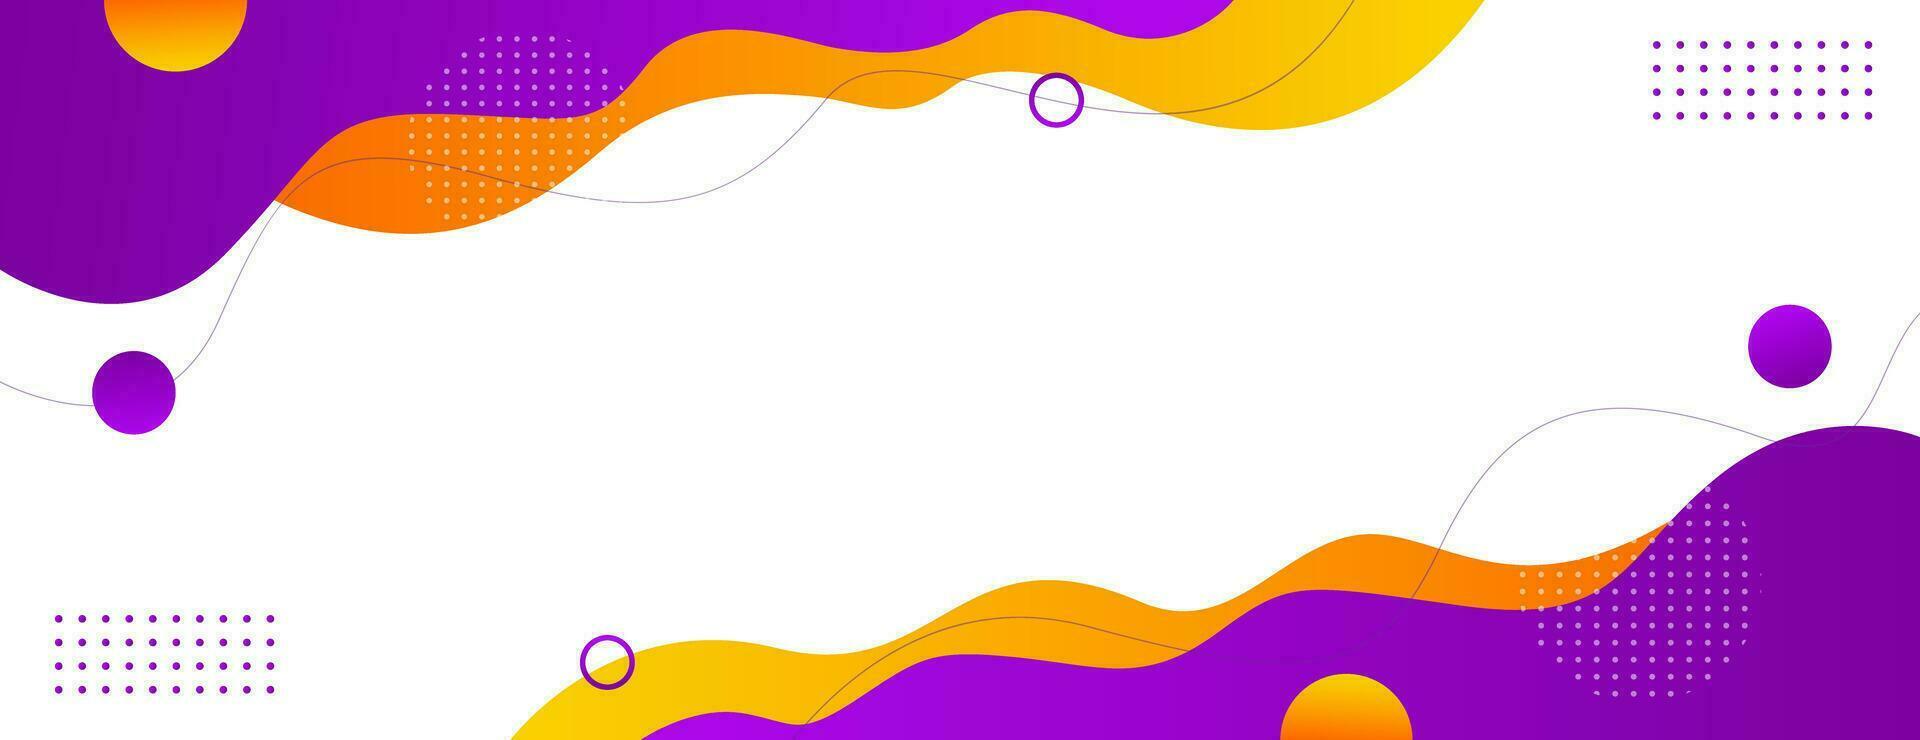 abstrakt baner bakgrund med vätska former i lila och orange Färg. vektor illustration. lämplig för företag försäljning, evenemang, mallar, sidor, och andra